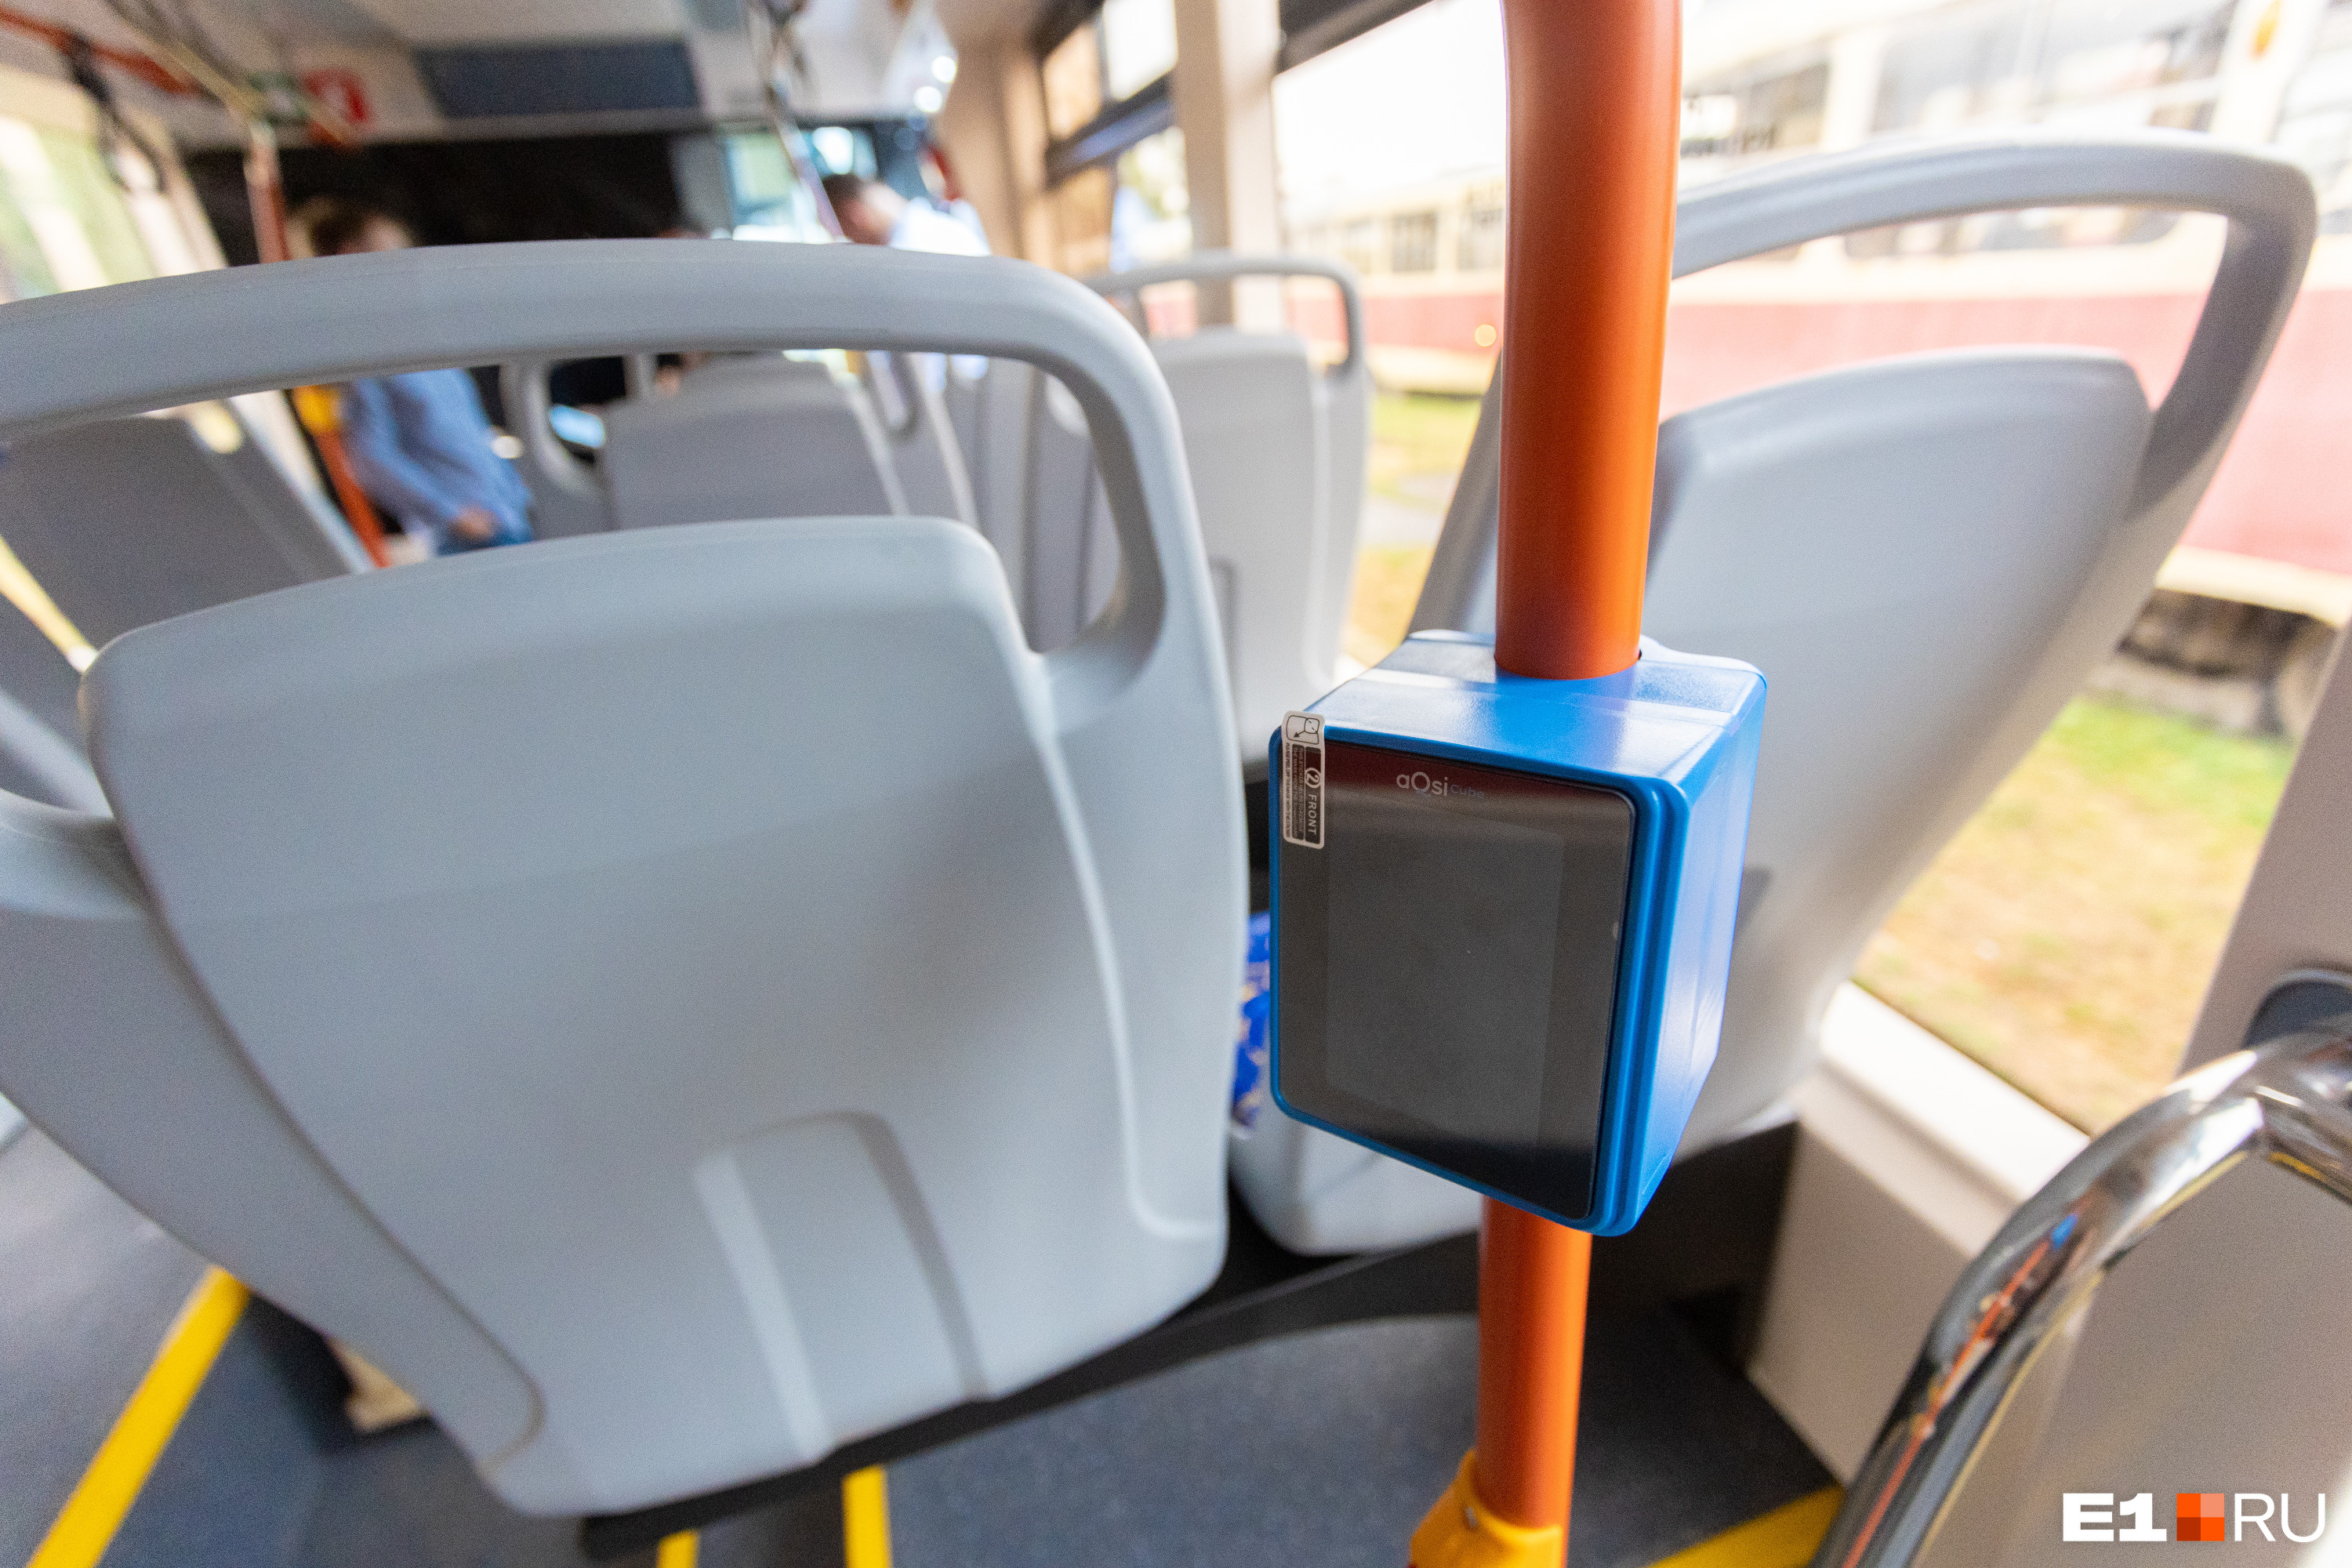 Оплатить проезд в верхнепышминском трамвае можно будет с помощью бесконтактных валидаторов